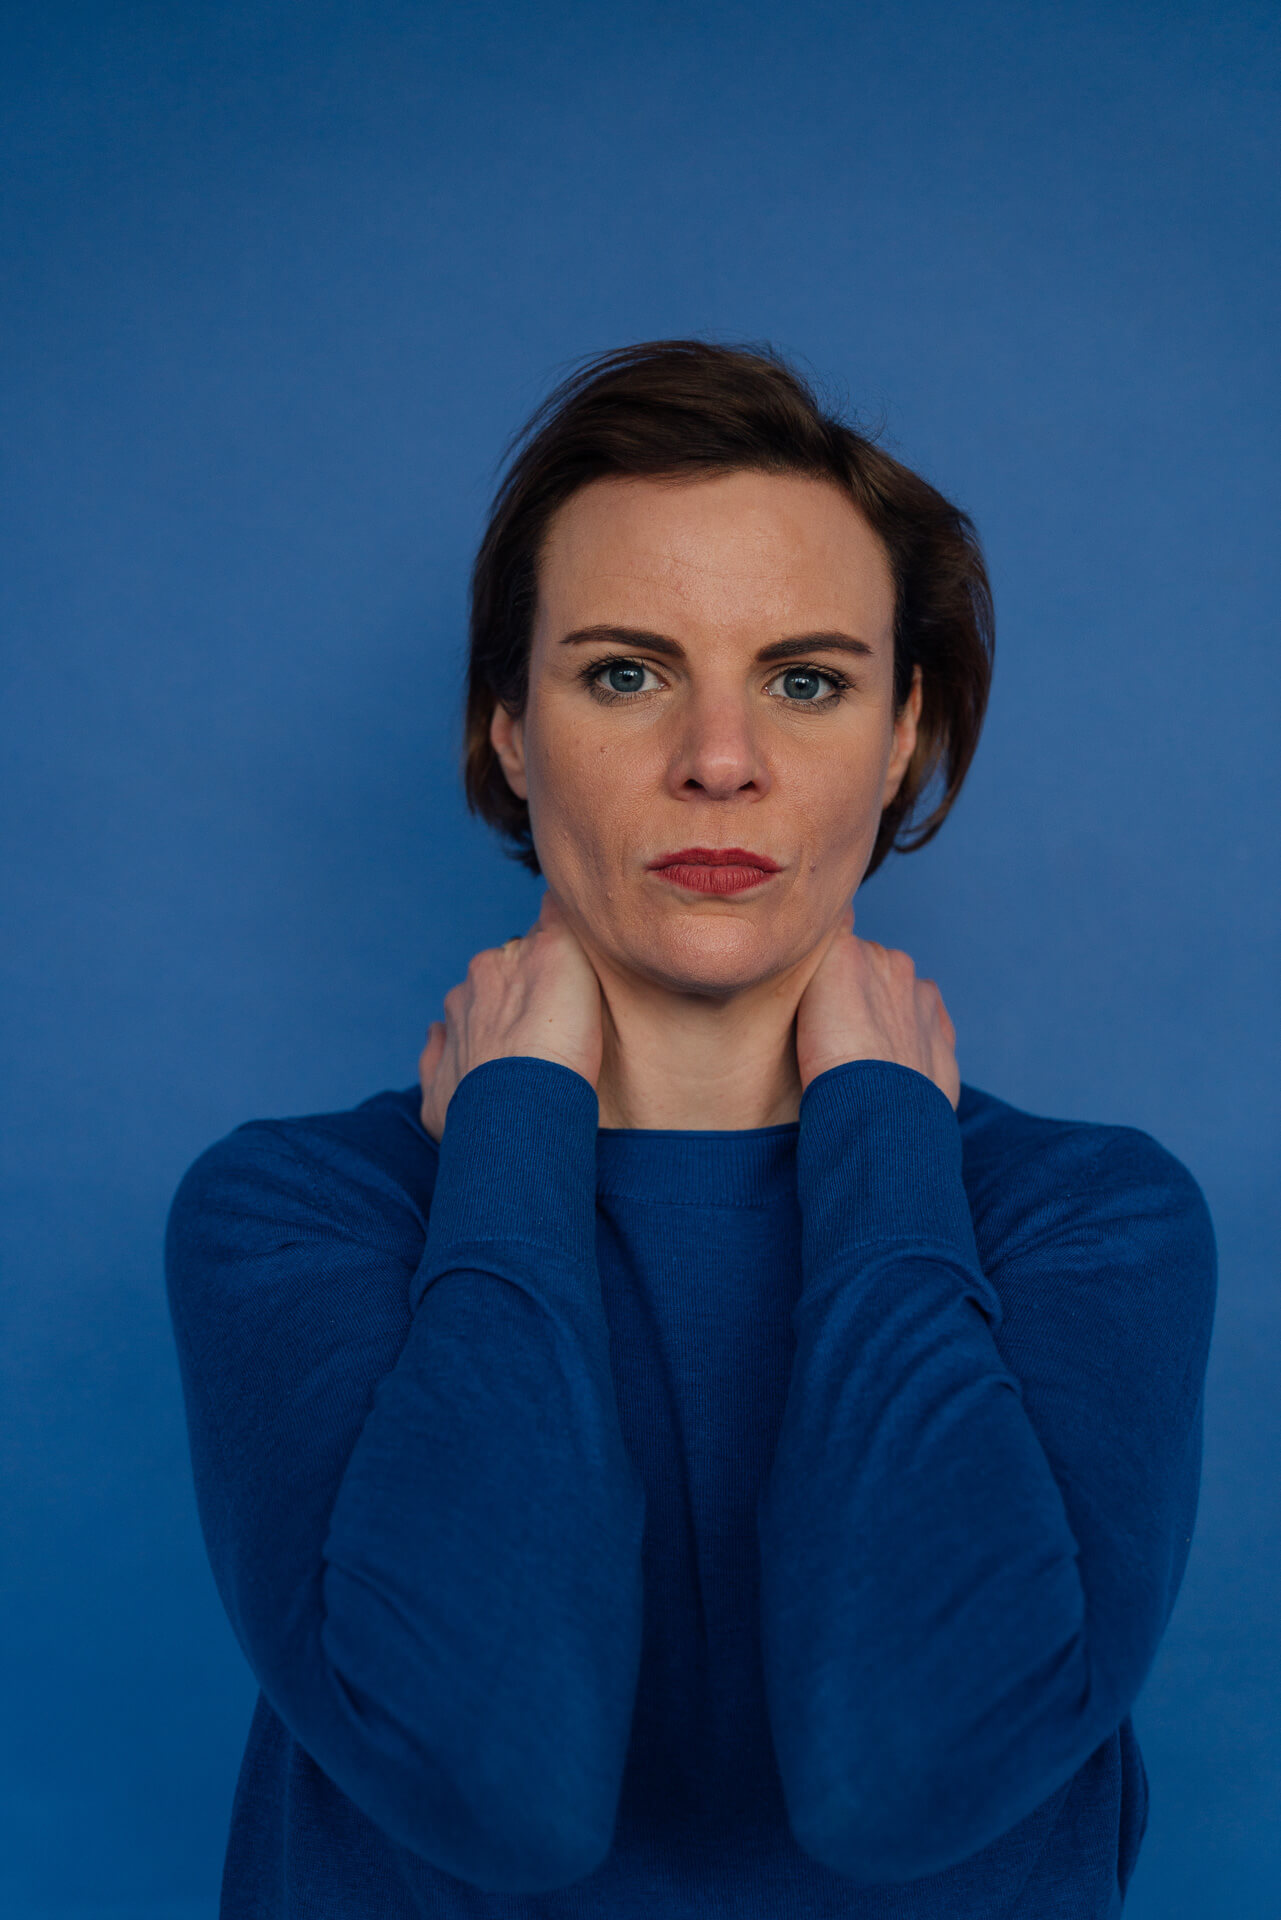 Portrait einer Frau die ihre Hände im Nacken zusammenhält und direkt in die Kamera schaut. Der Hintergrund ist blau und sie trägt einen blauen Pullover. Das Bild ist zum Aufbau einer Personal Brand. 